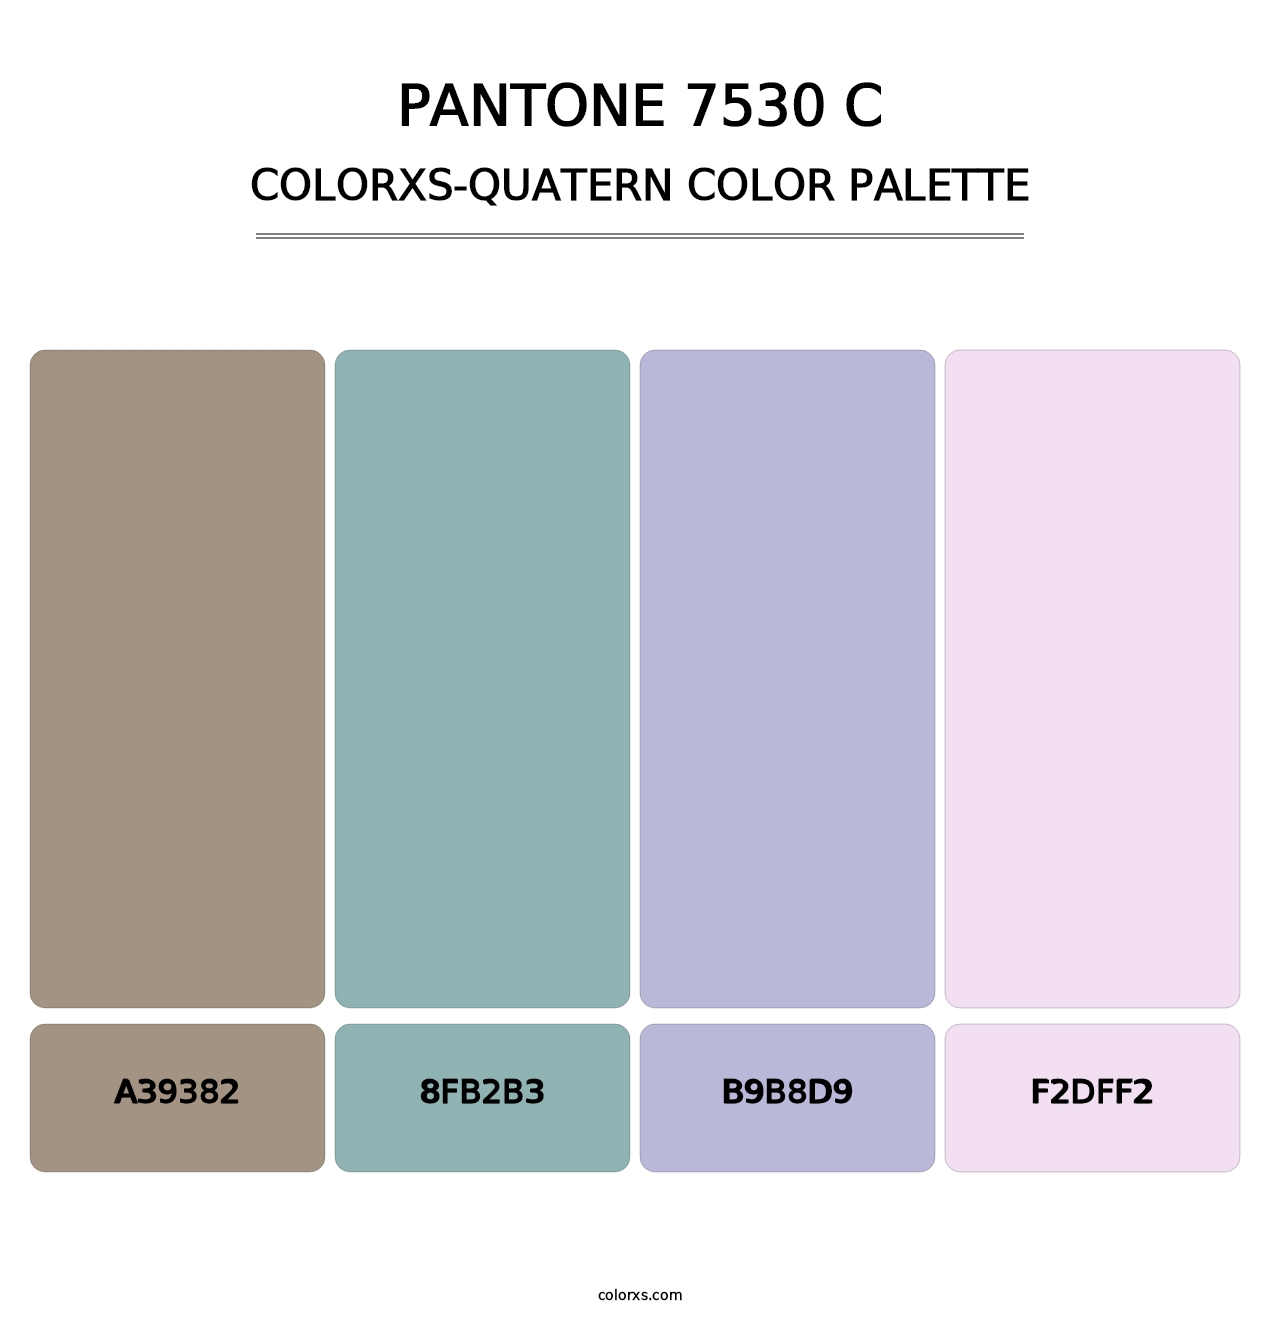 PANTONE 7530 C - Colorxs Quatern Palette